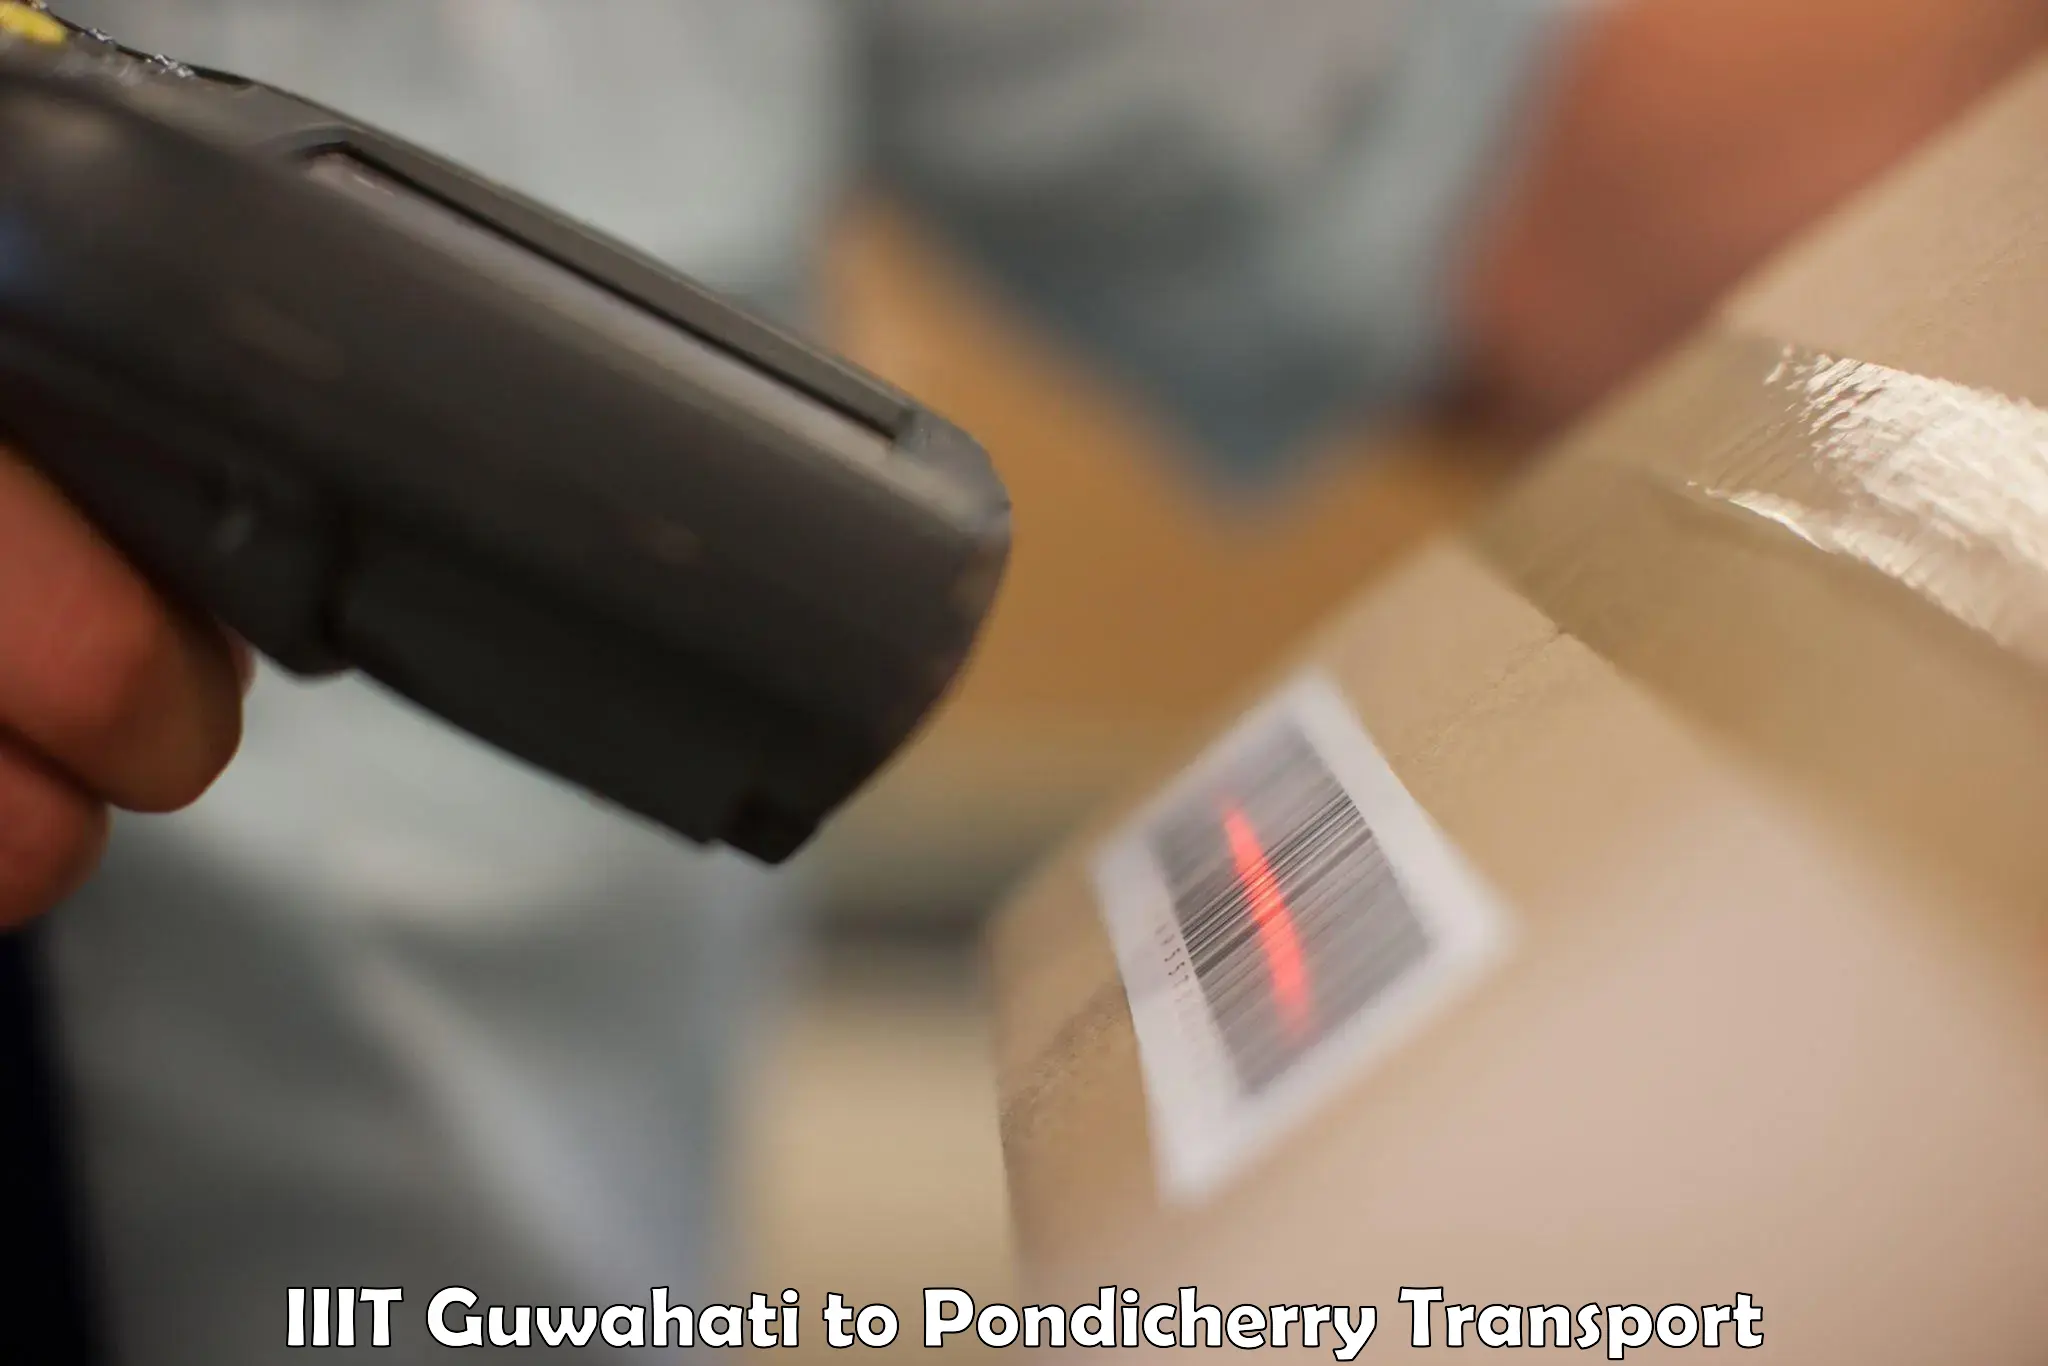 Transportation services IIIT Guwahati to Pondicherry